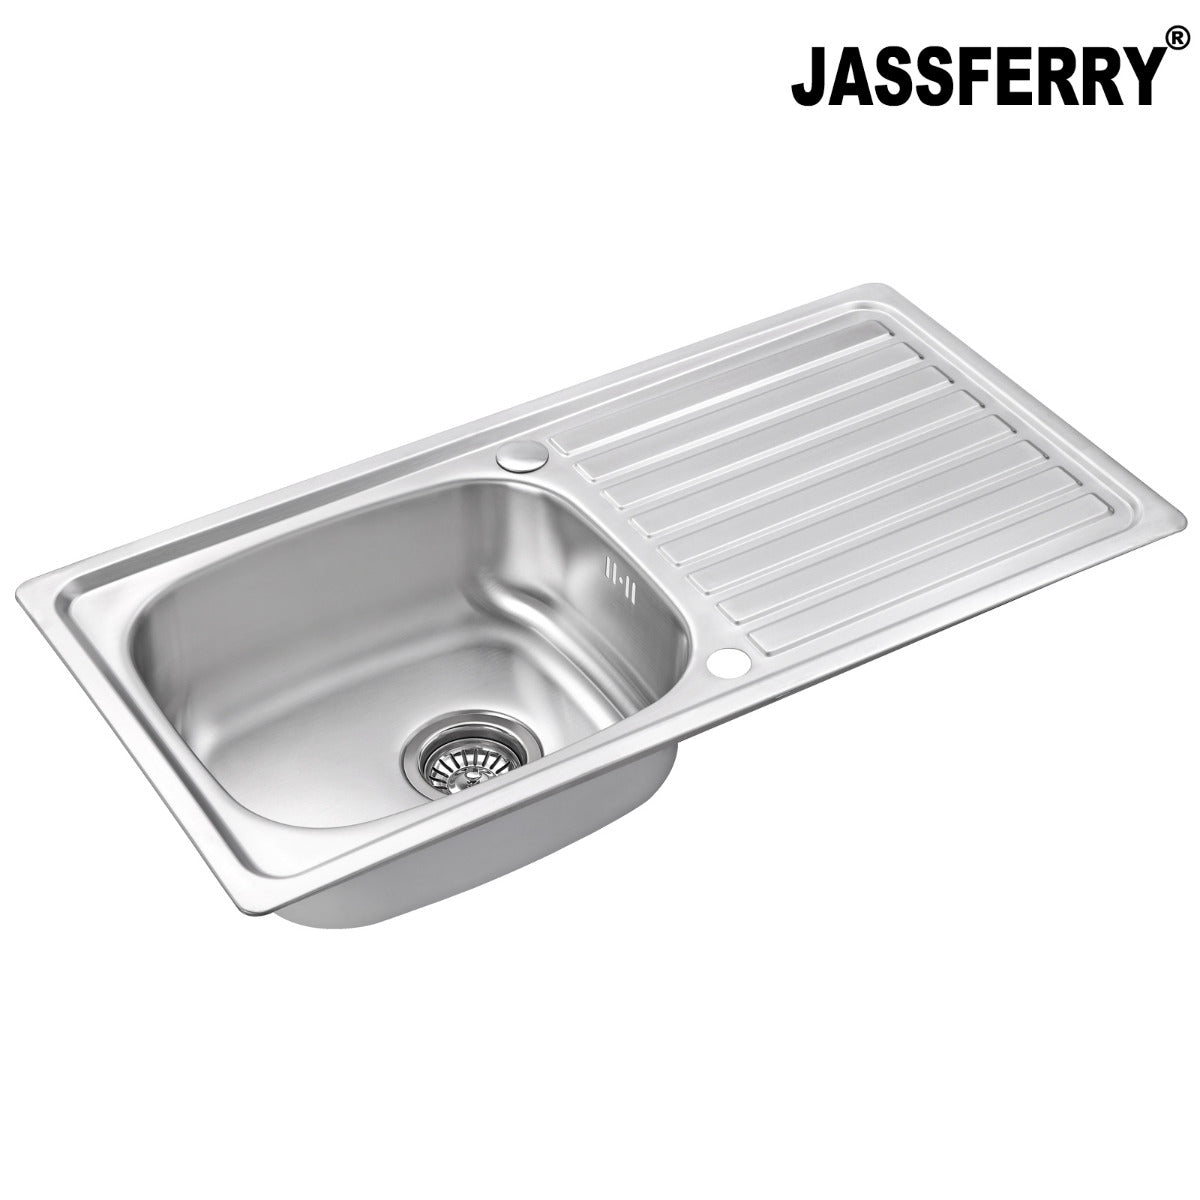 JassferryJASSFERRY 860 x 435 mm Stainless Steel Kitchen Sink Inset Single 1 Bowl Reversible Drainer - 940Kitchen Sinks